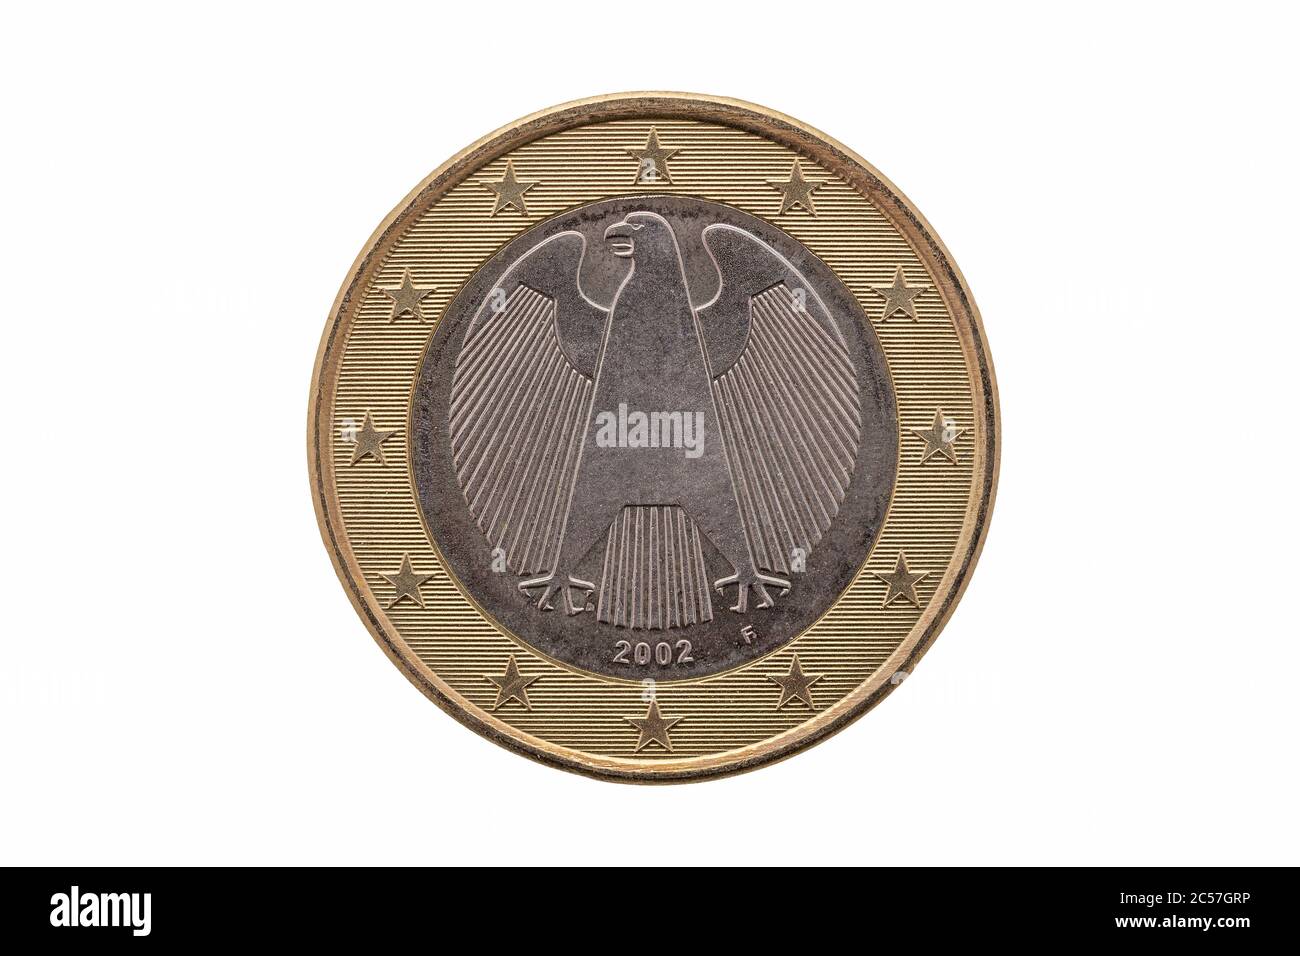 Rückseite einer 1-Euro-Münze von Deutschland aus dem Jahr 2002, die den  deutschen Adler auf weißem Grund herausgeschnitten und isoliert zeigt  Stockfotografie - Alamy